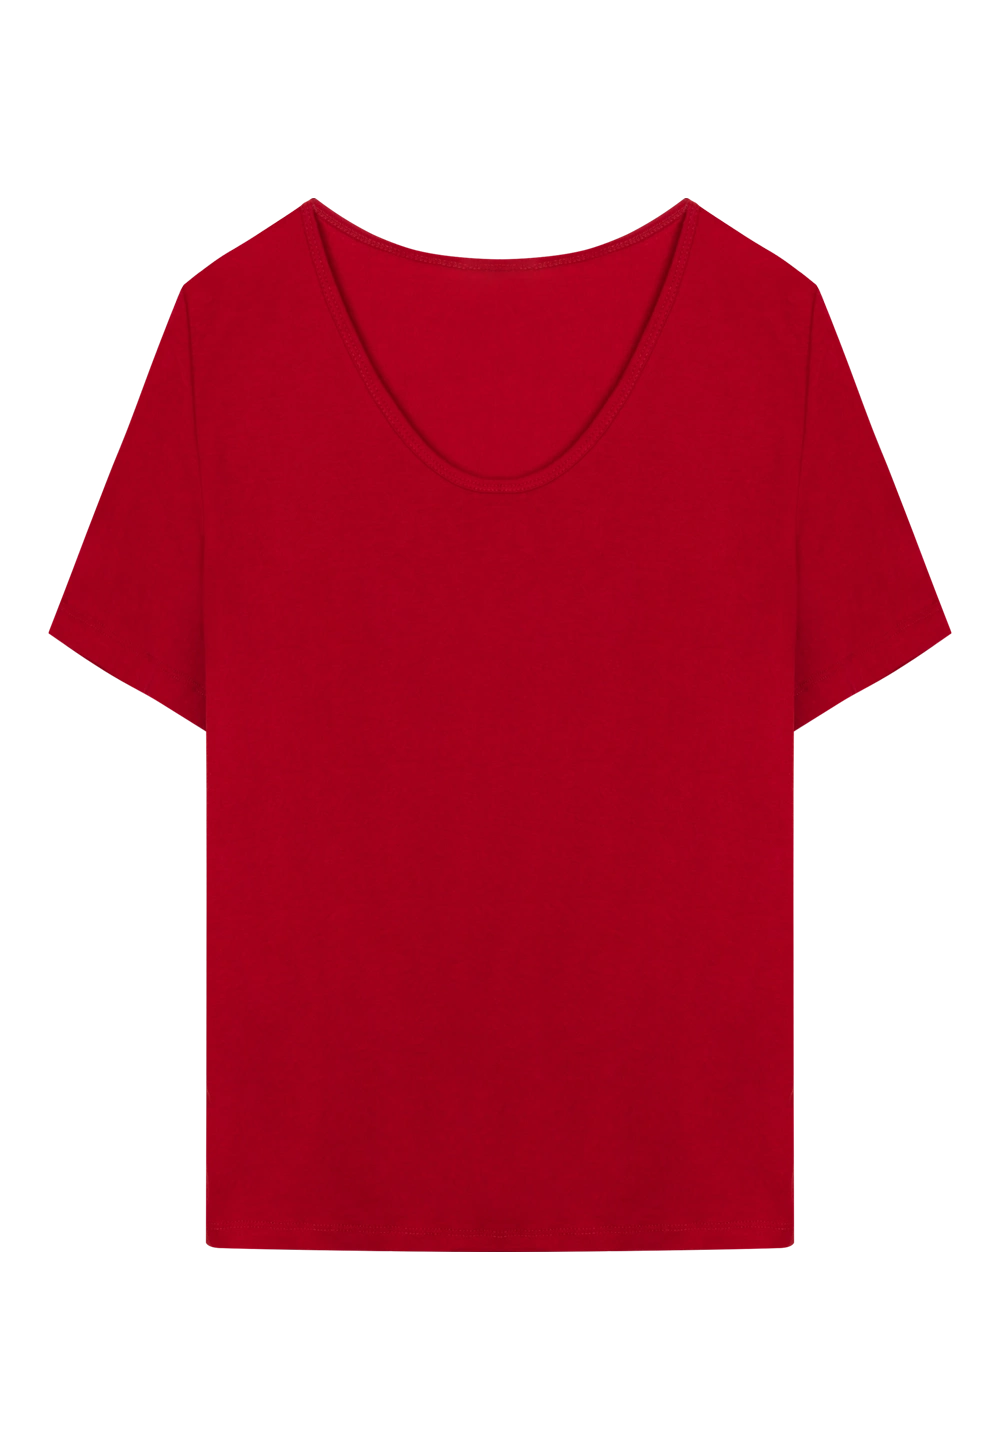 Women's  Short Sleeve T-Shirt - Soft Cotton Blend